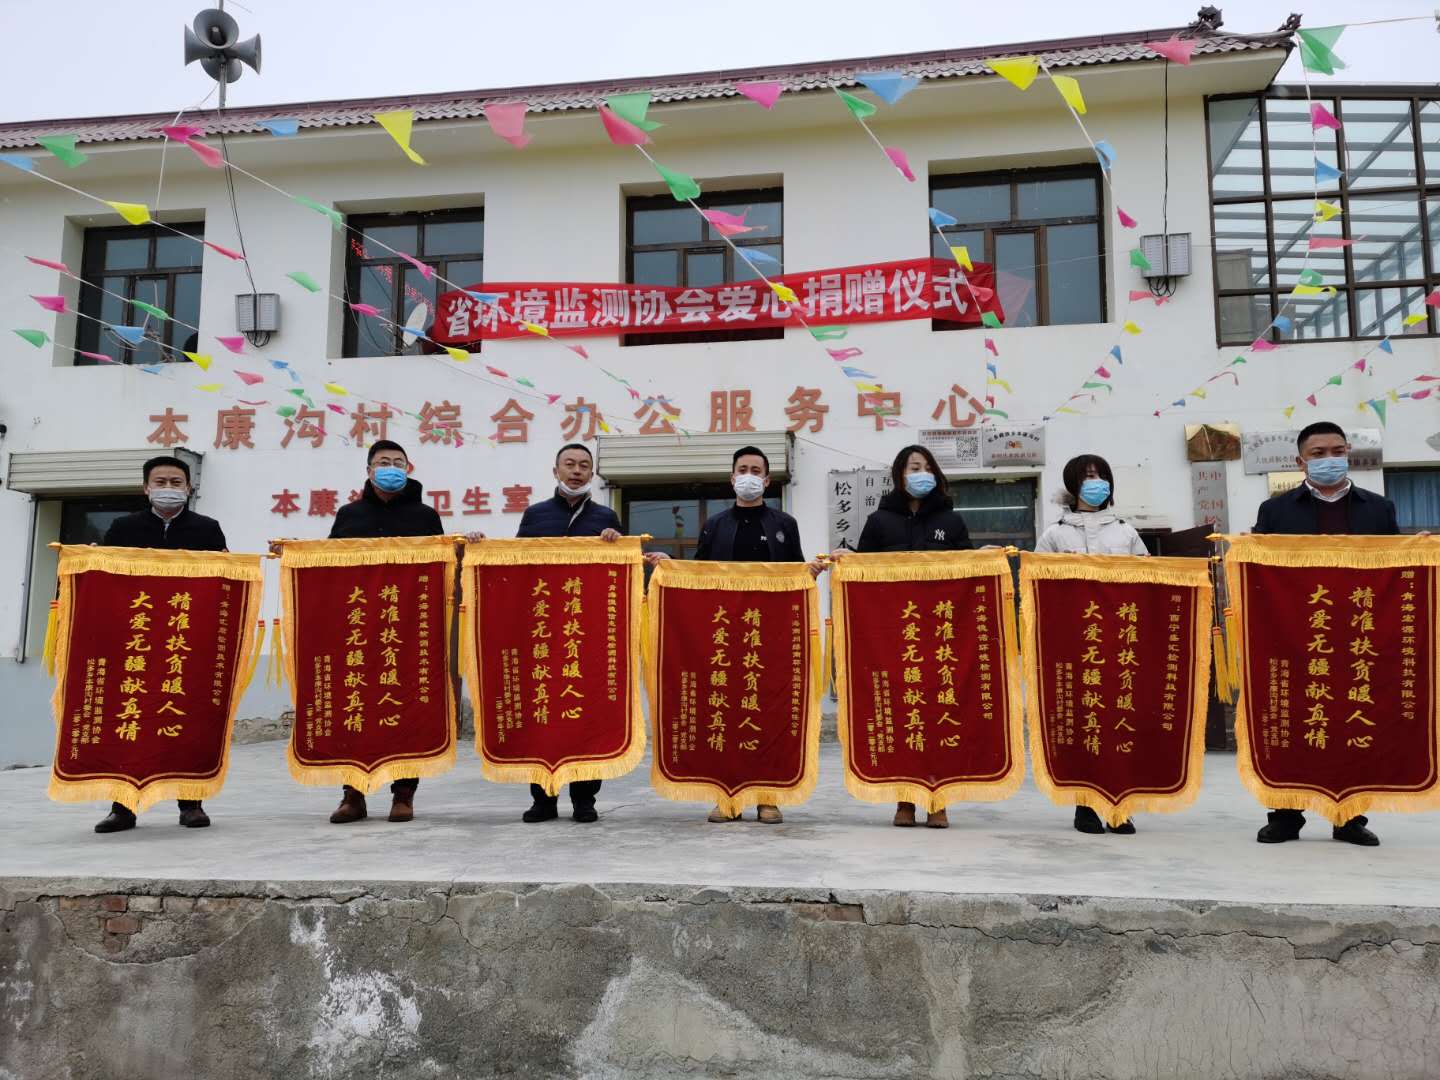 本康沟村两委为到现场参加捐赠装载机仪式的会员单位颁发锦旗